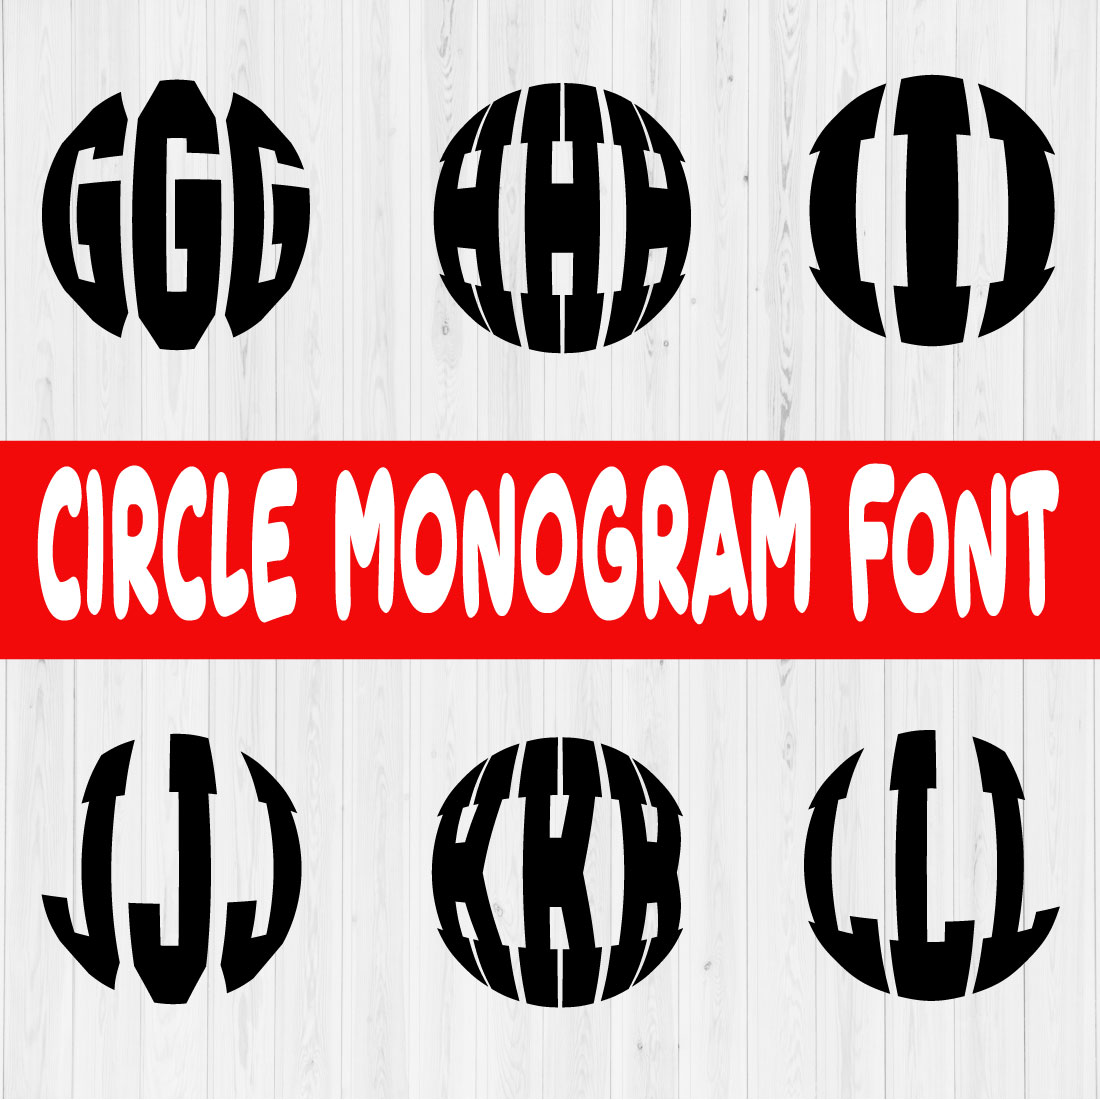 Circle Monogram Font Vol2 preview image.